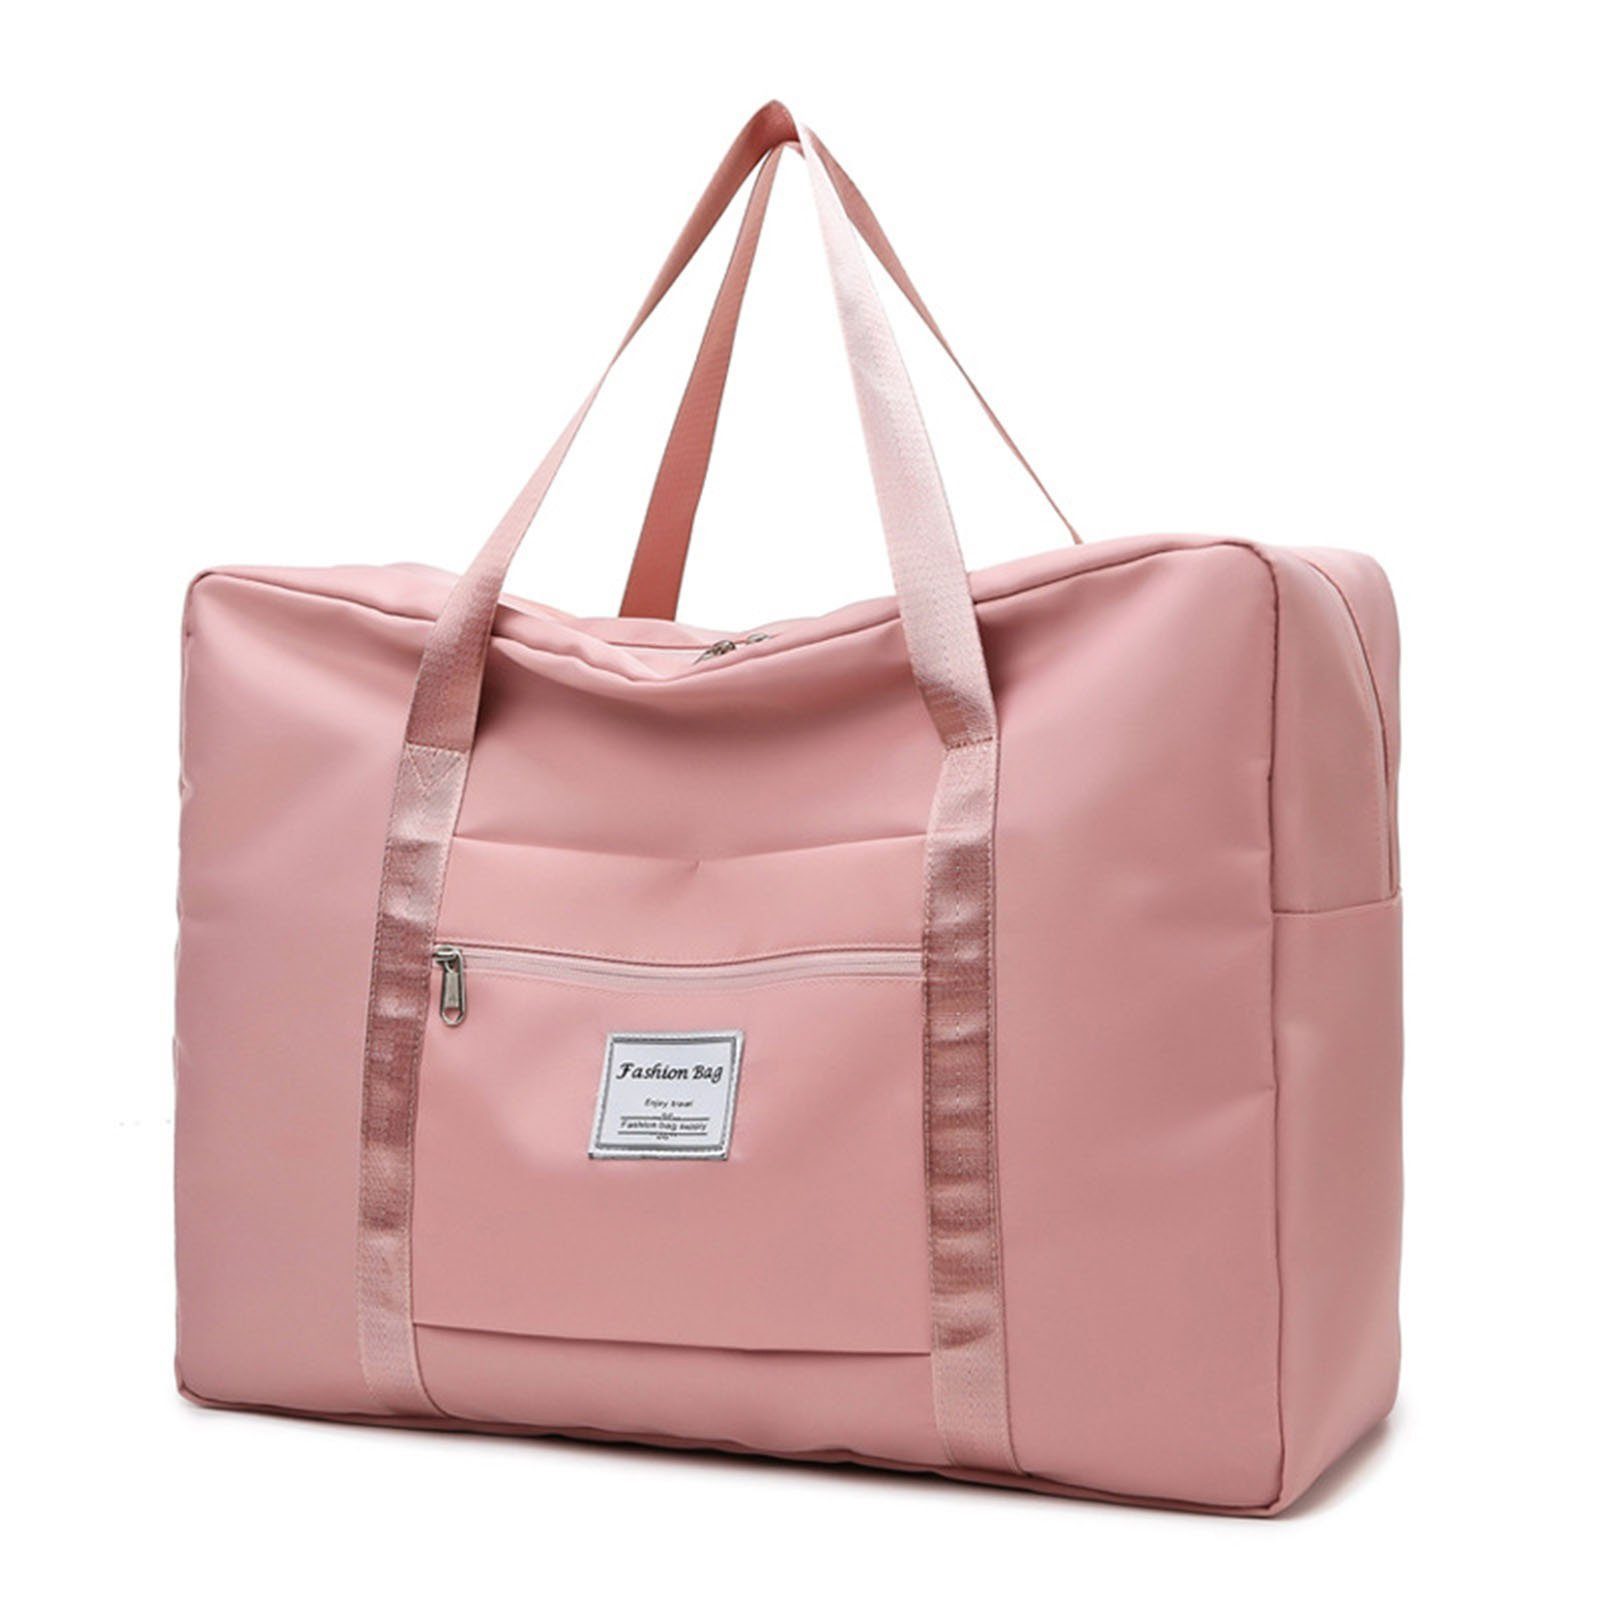 Blusmart Sporttasche Einfarbige, Große Sporttasche Mit Reißverschluss, Große Kapazität pink